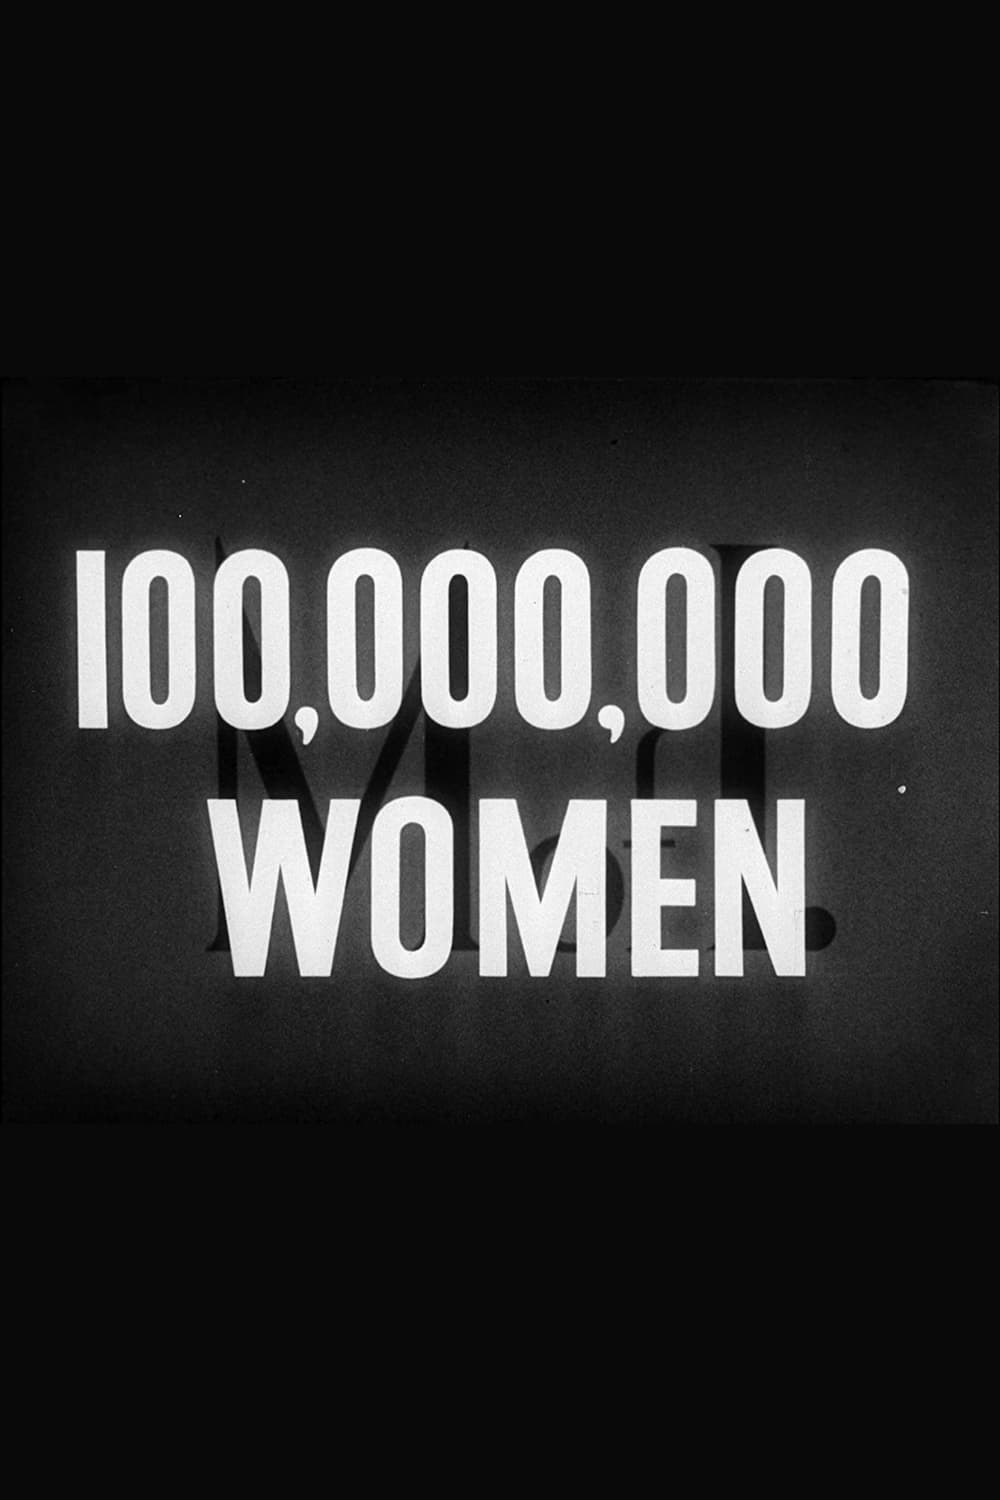 100,000,000 Women